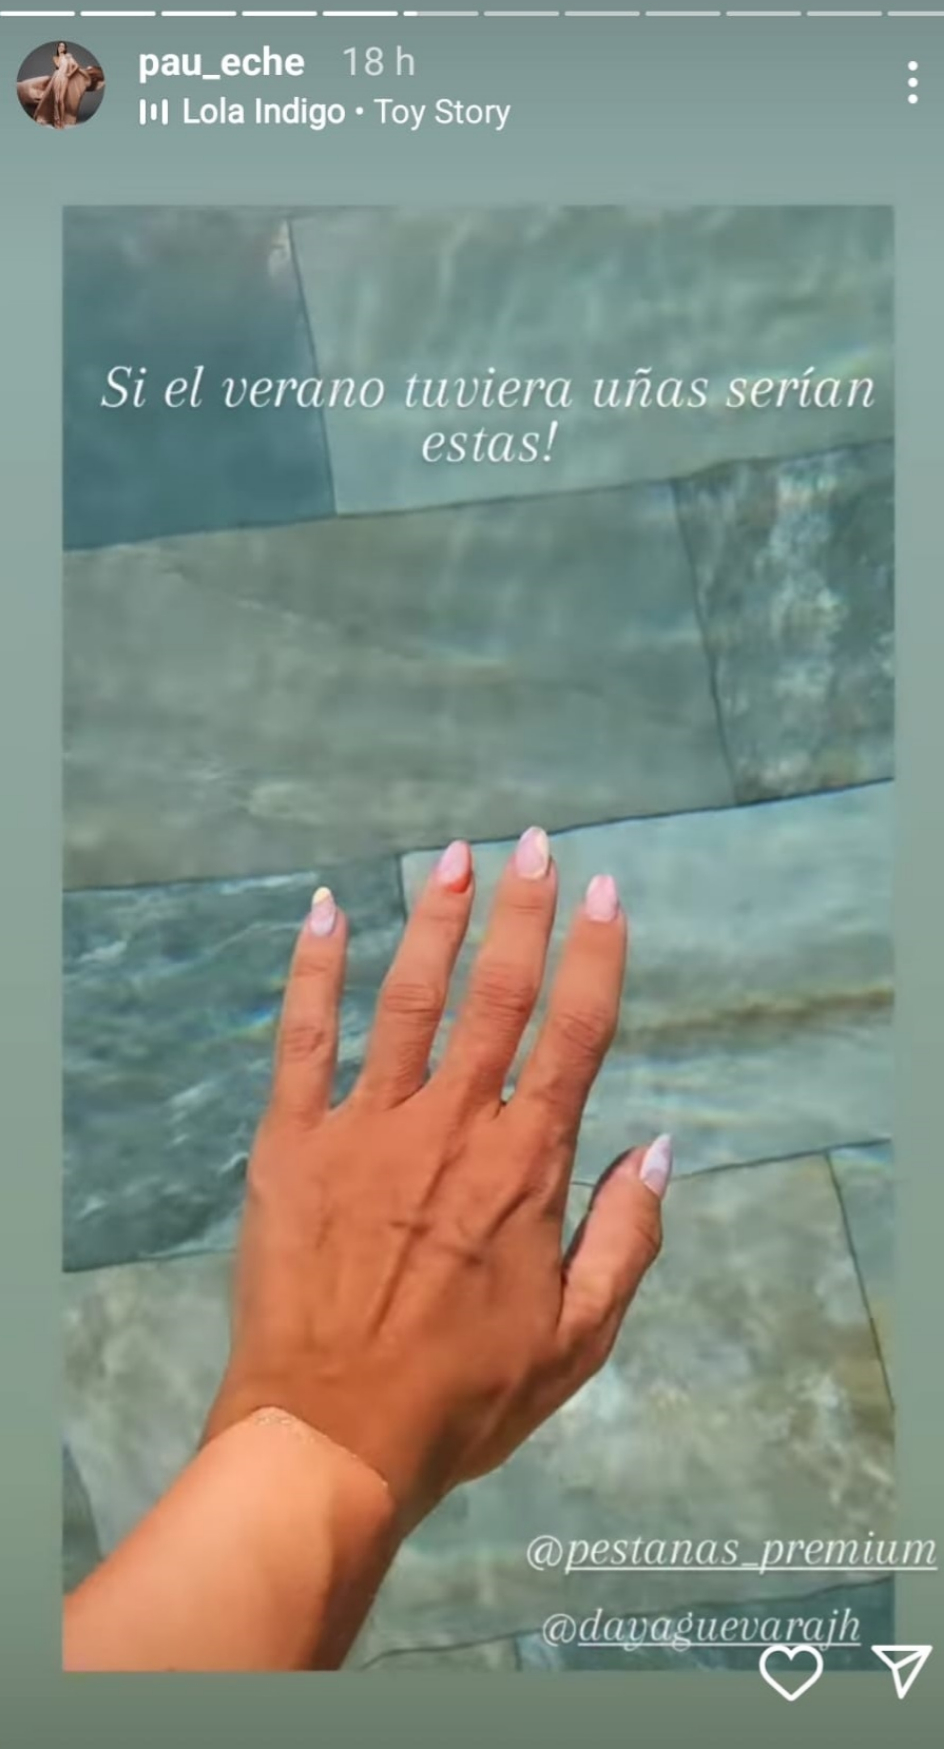 Detalle de la manicura de Paula Echevarría.